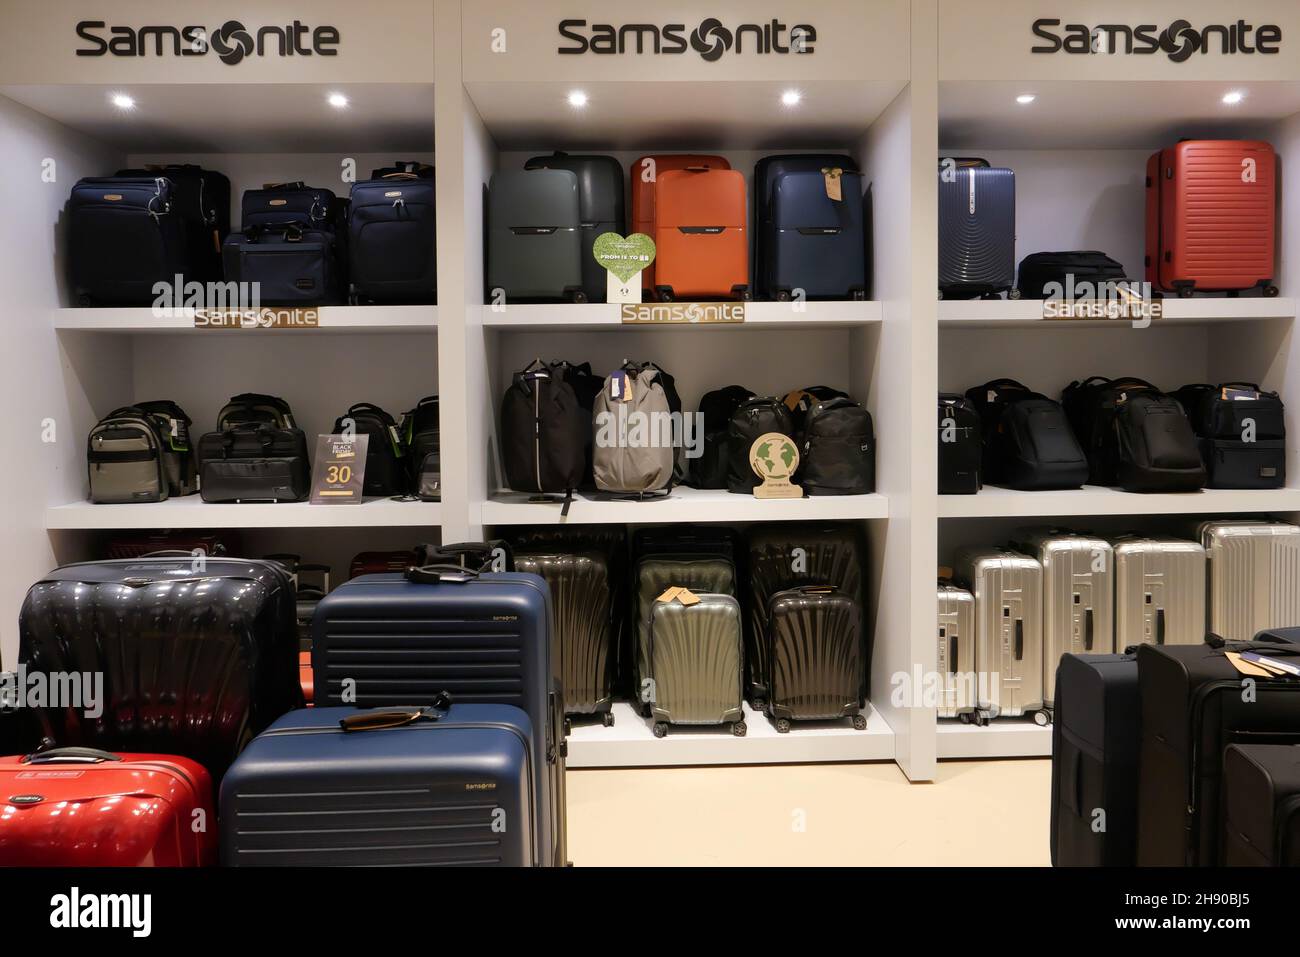 Samsonite store shop immagini e fotografie stock ad alta risoluzione - Alamy